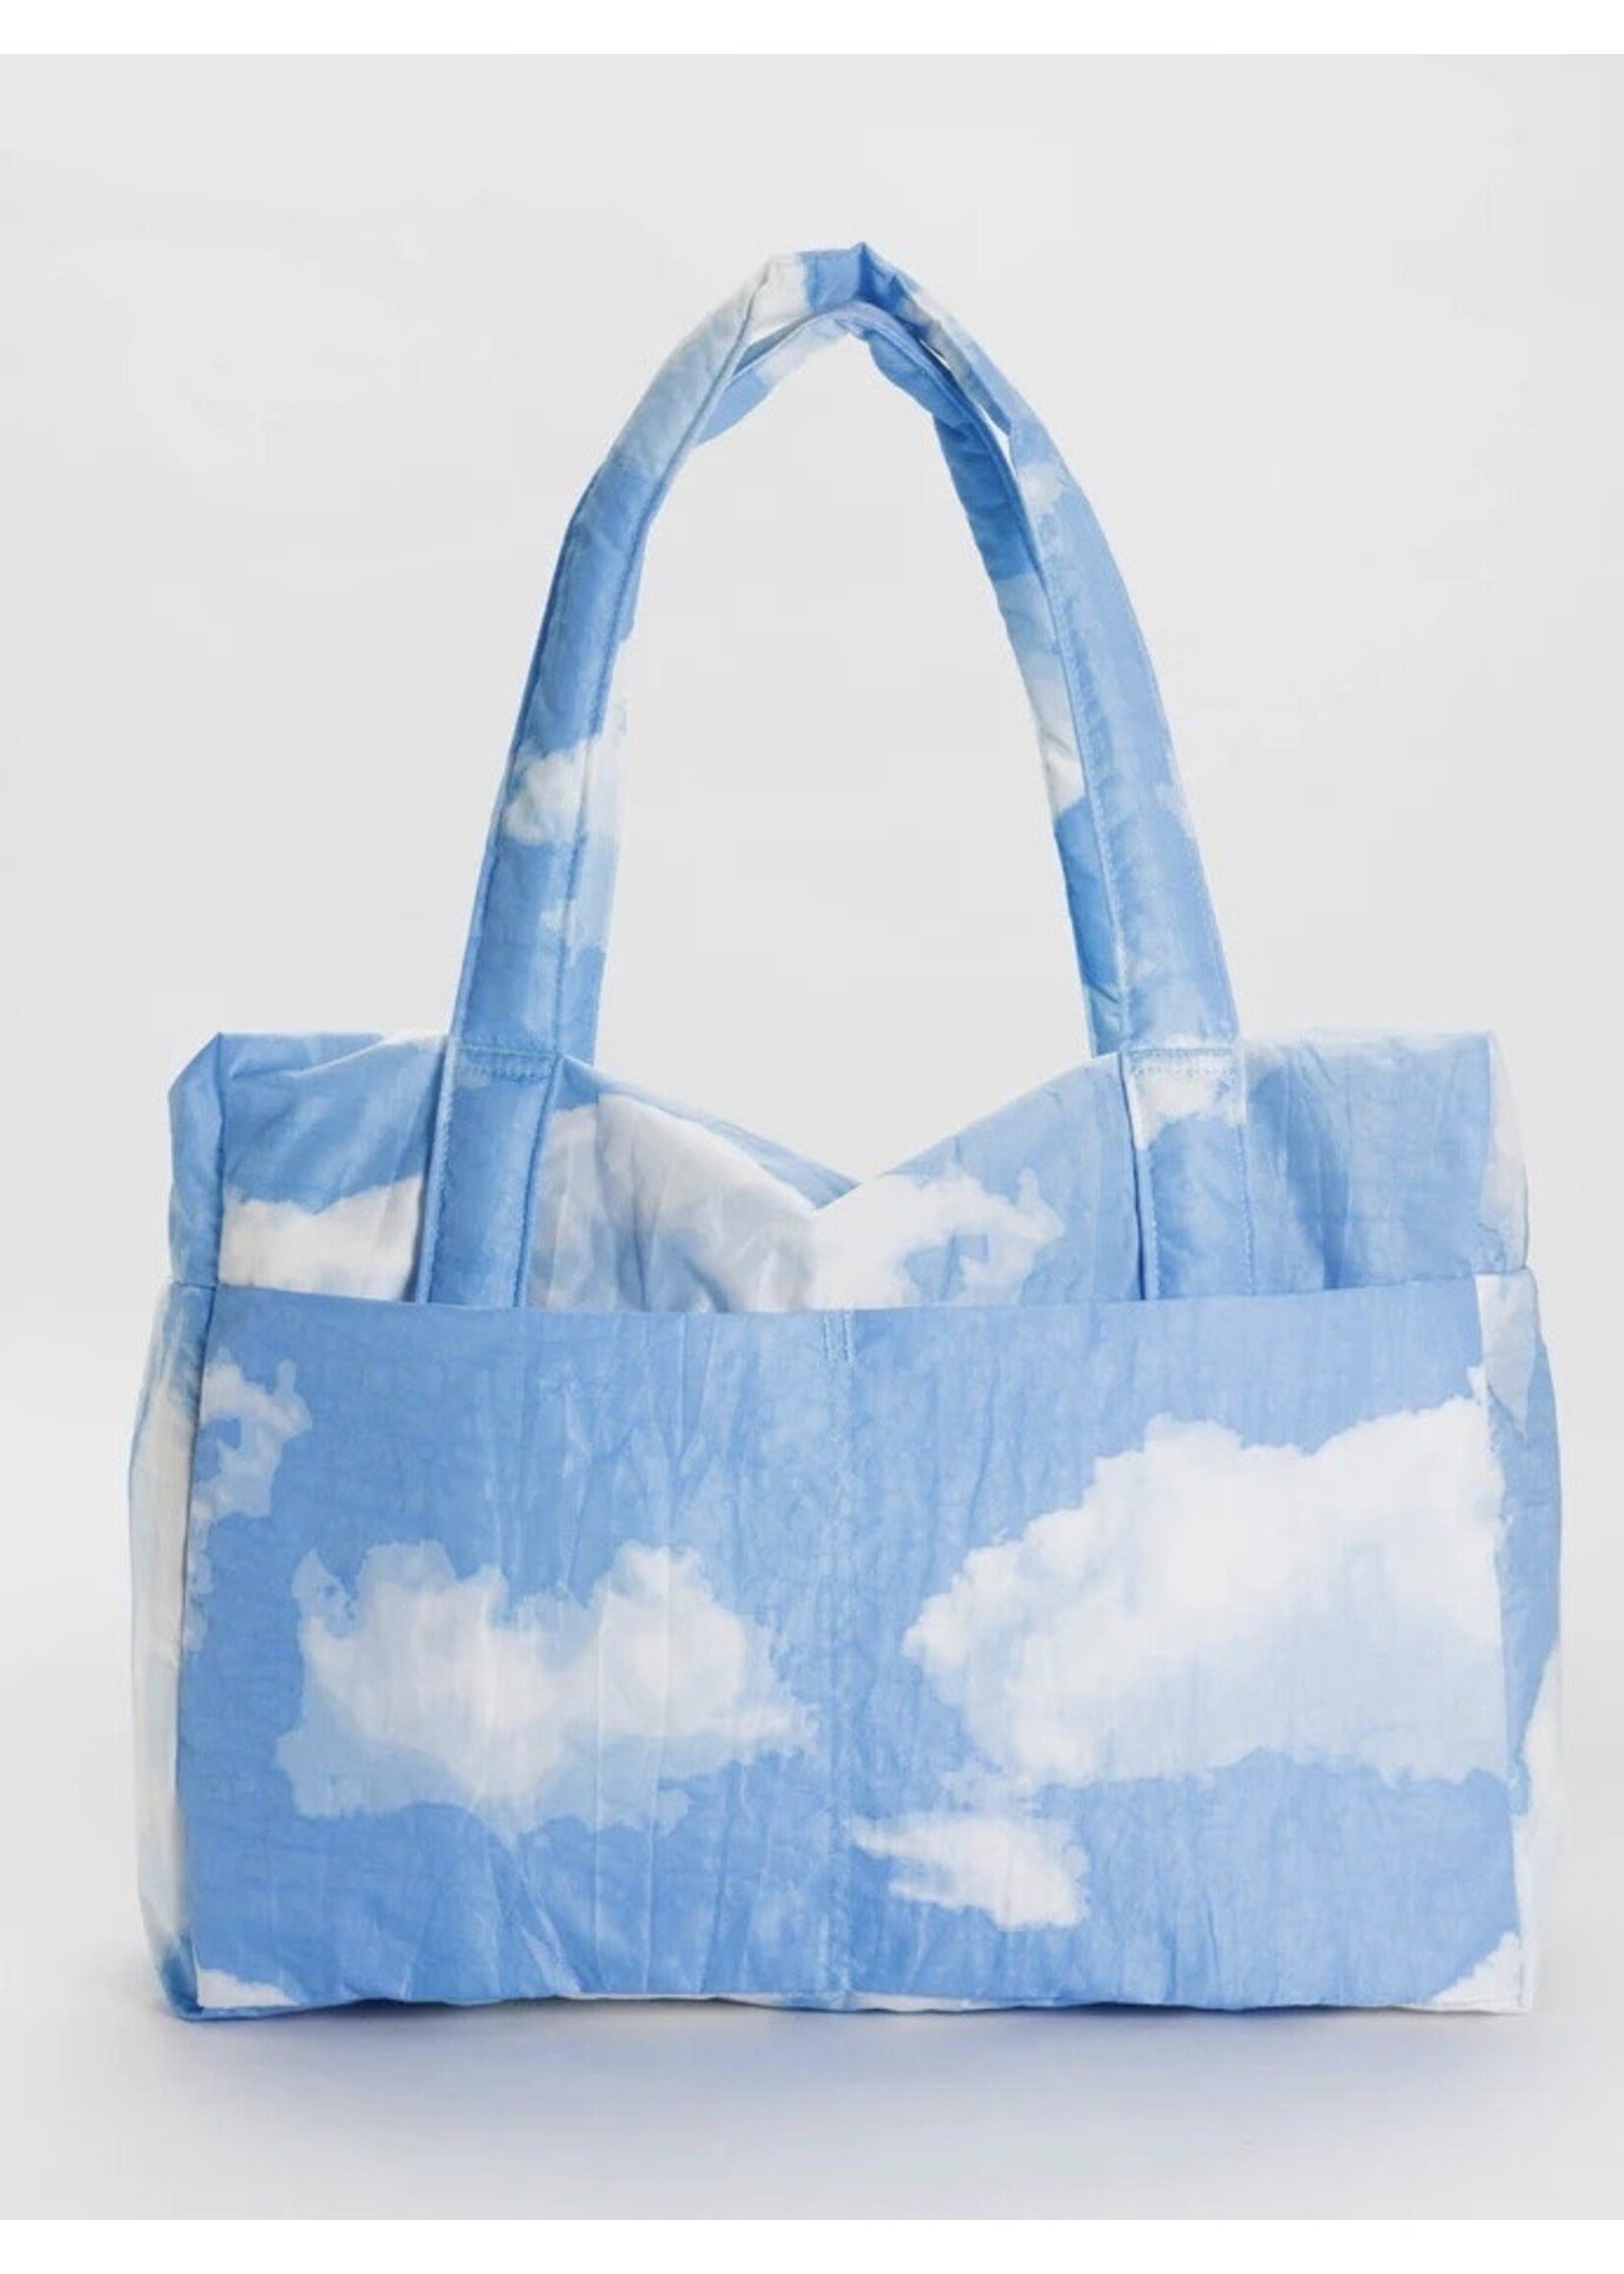 Baggu "Cloud Carry-On" travel bag by Baggu